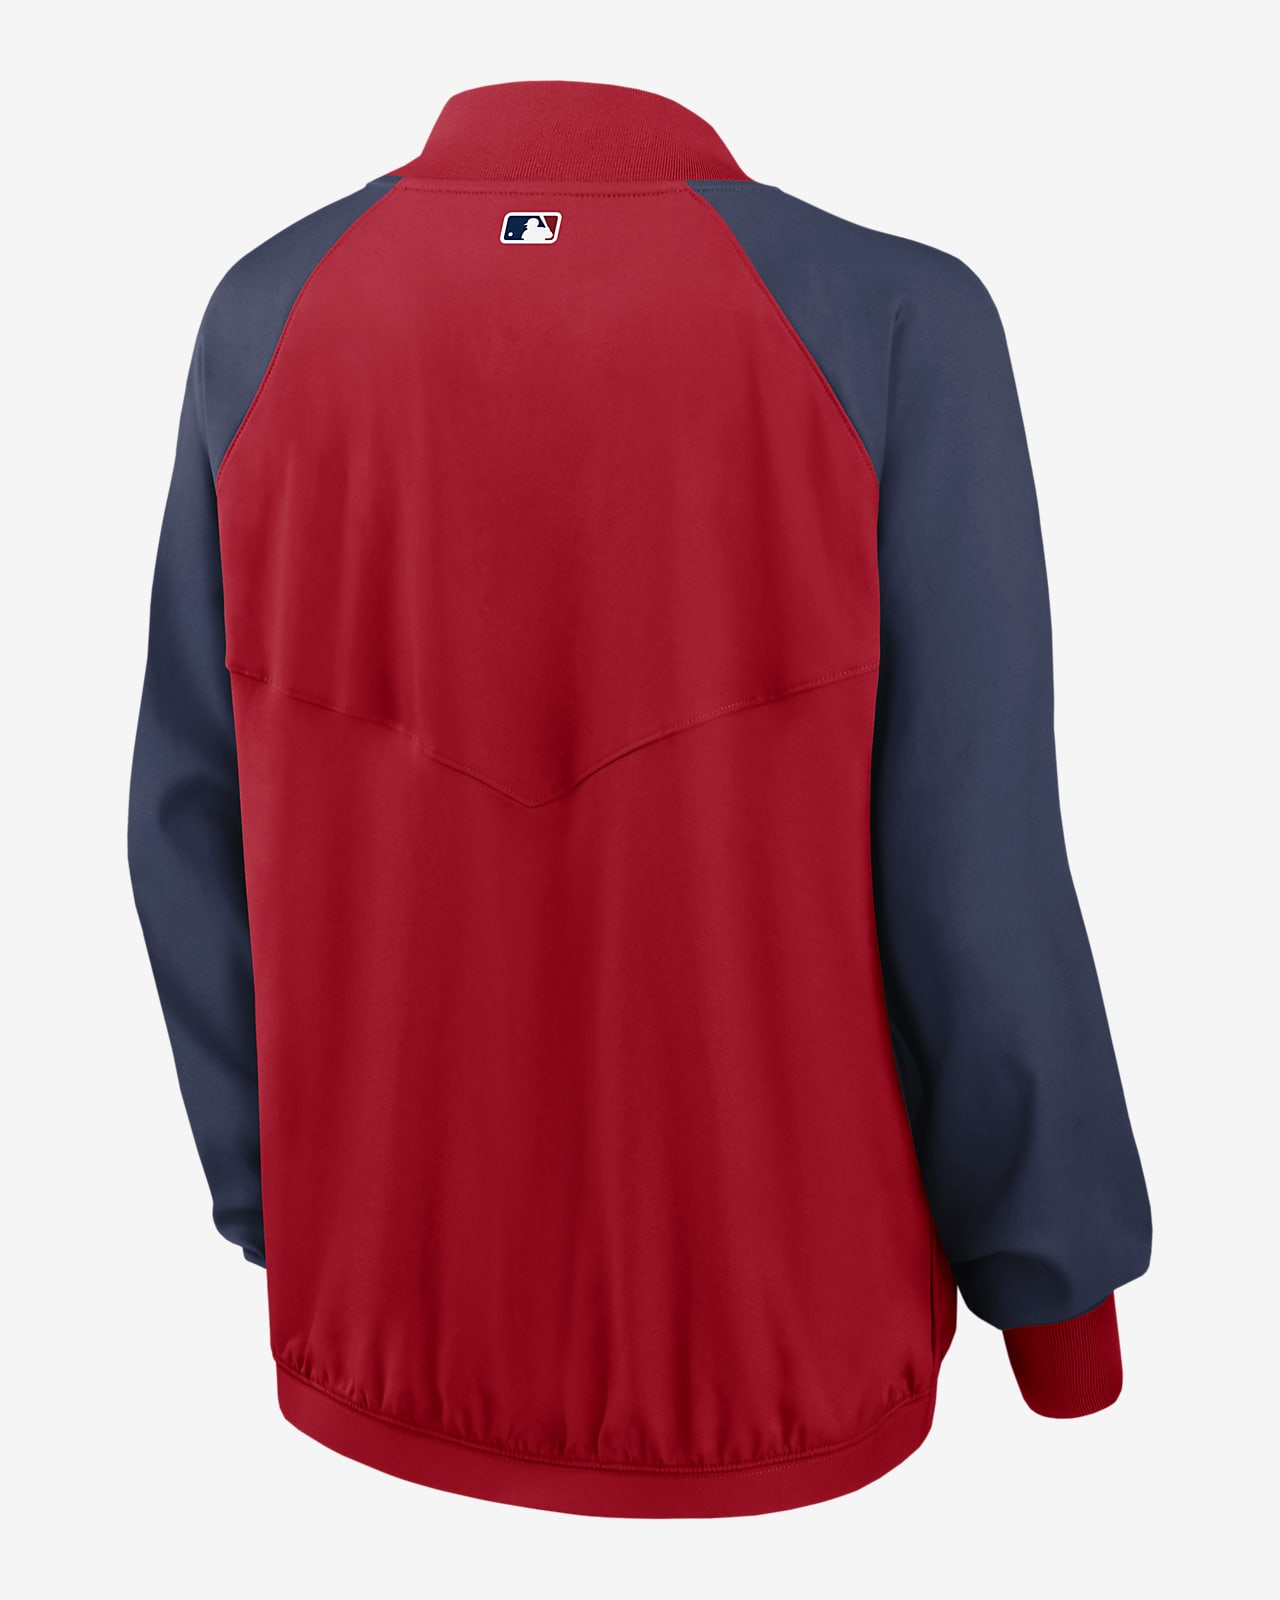 Nike Dri-FIT Team (MLB St. Louis Cardinals) Women's Full-Zip Jacket